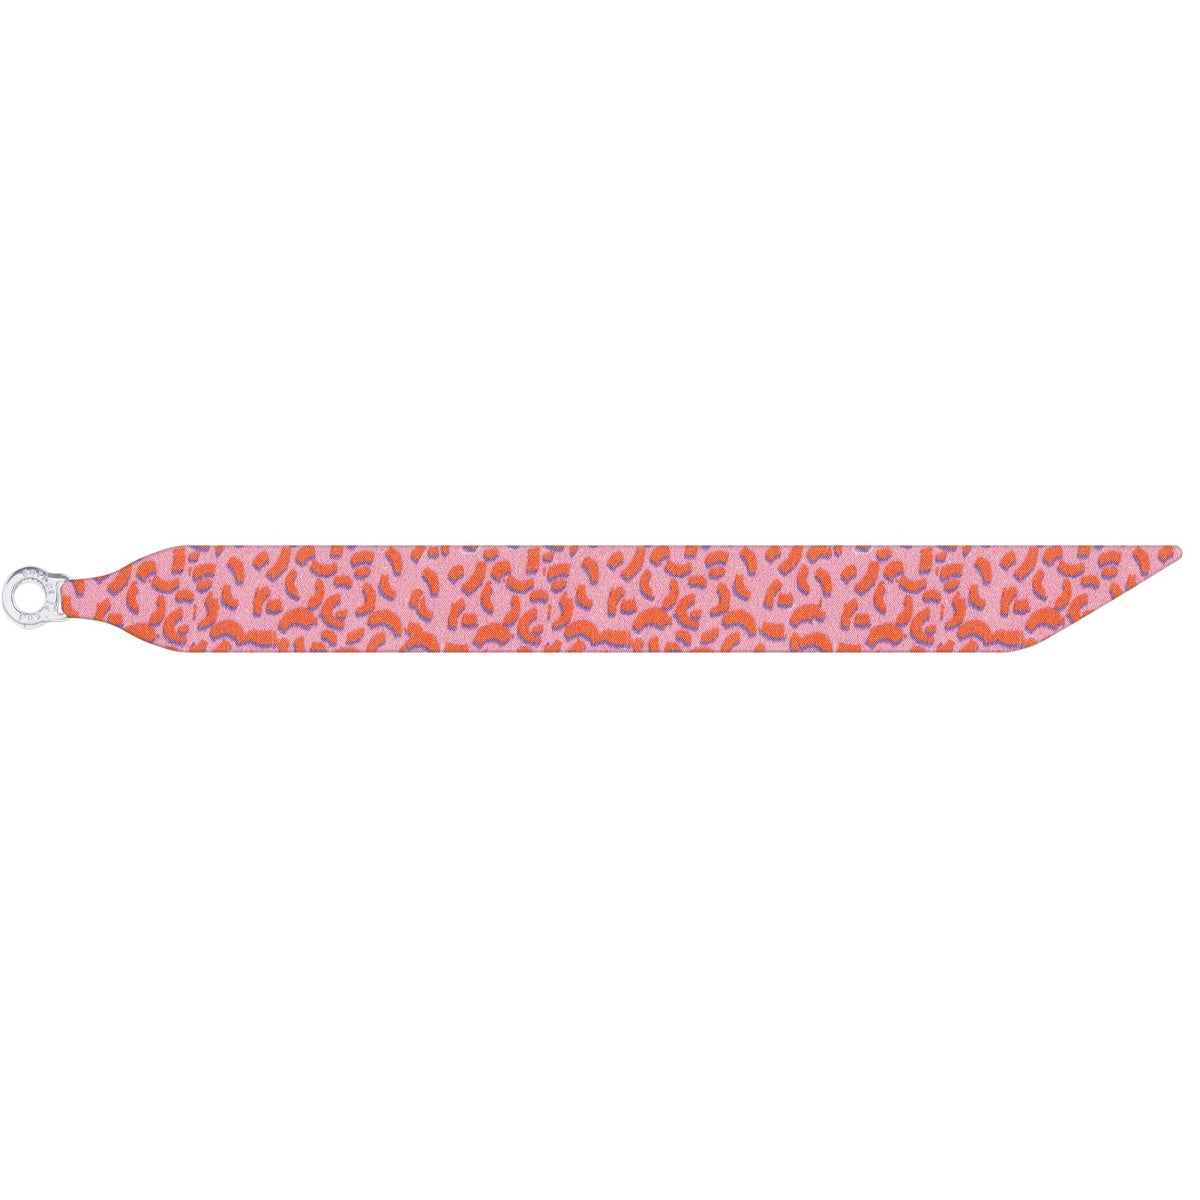 Produktbild: Sorbet Island - Silk Bracelet - Chunk von sorbet island im Onlineshop von dasMikruli - Dein Shop für Baby Erstausstattung